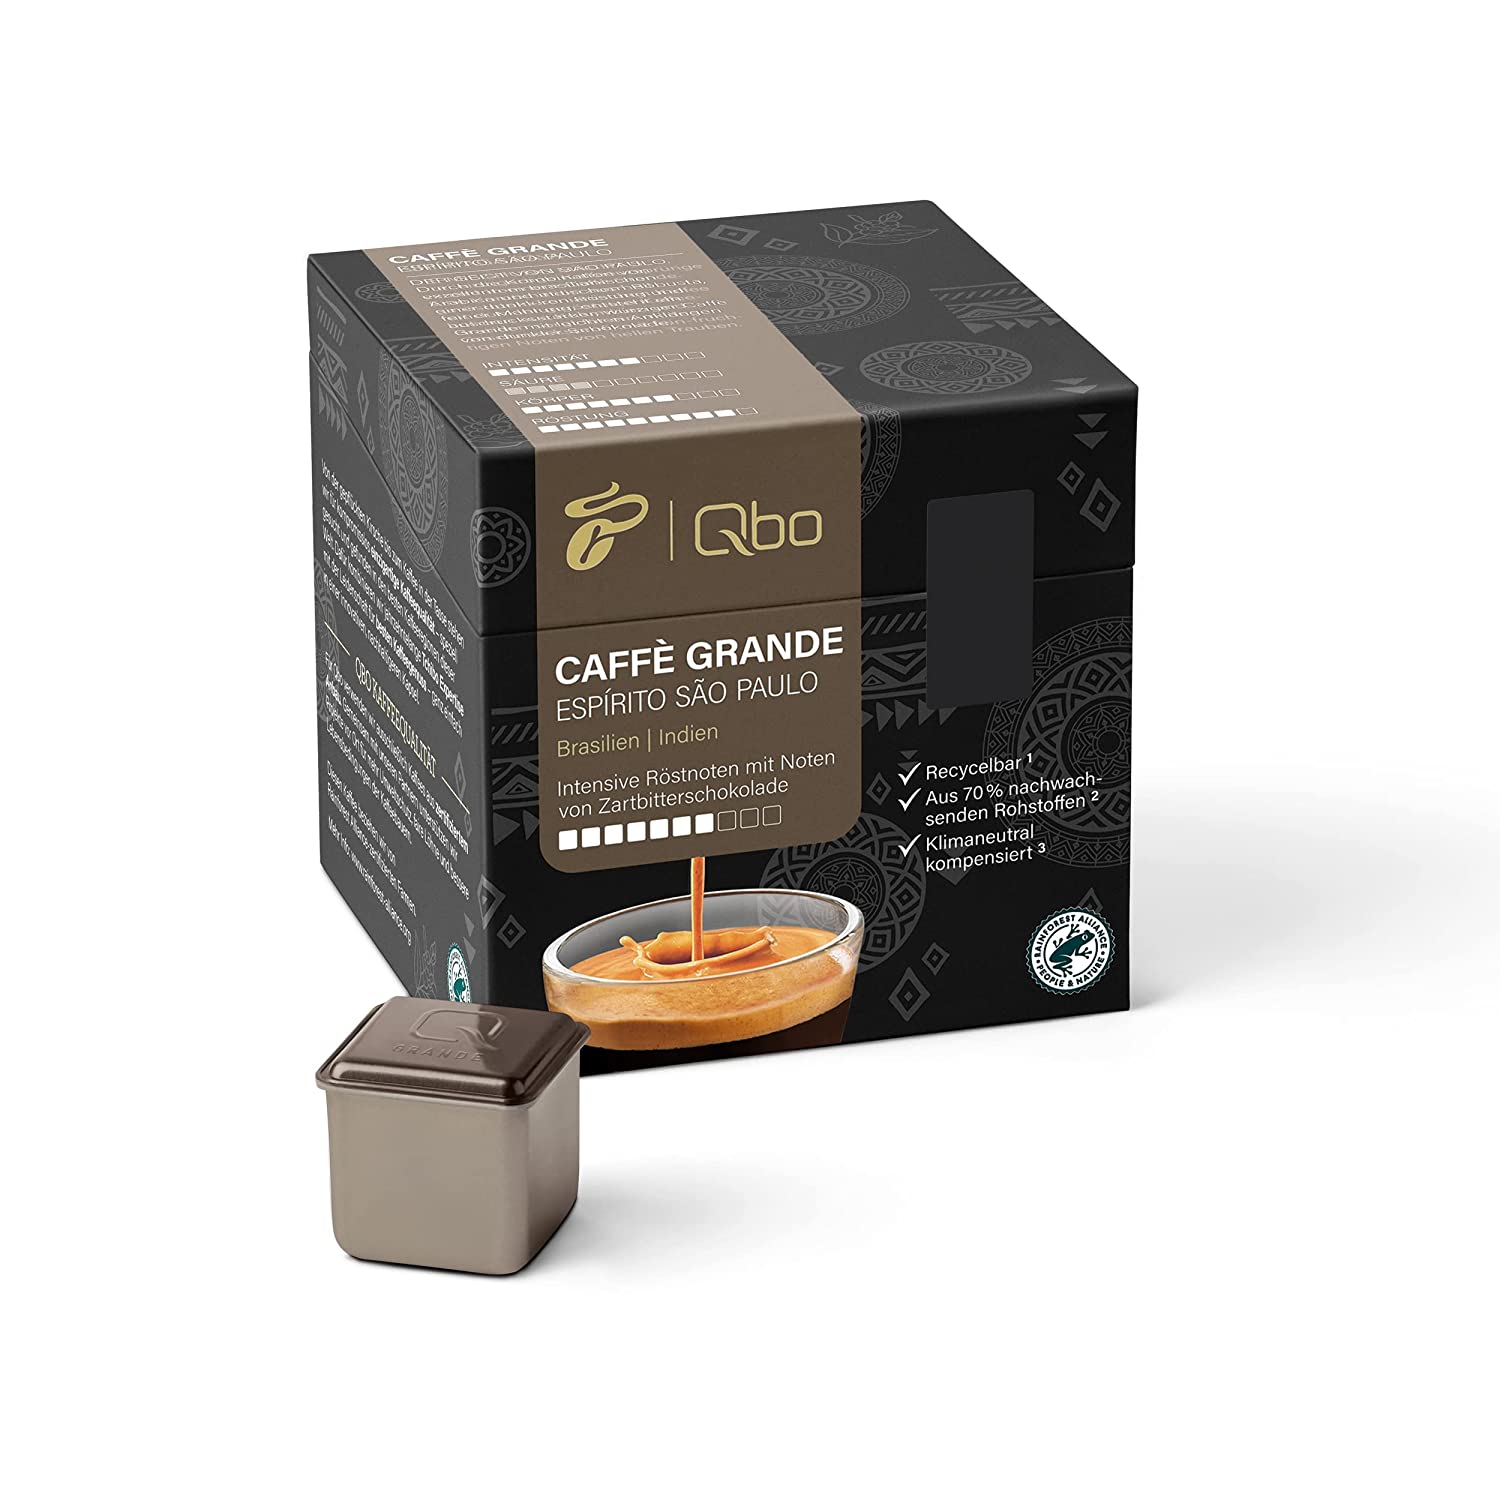 Tchibo Qbo Caffè Grande Espírito São Paulo Premium Kaffeekapseln, 27 Stück (Caffè Grande, Intensität 7/10, hocharomatisch), nachhaltig, aus 70% nachwachsenden Rohstoffen & klimaneutral kompensiert